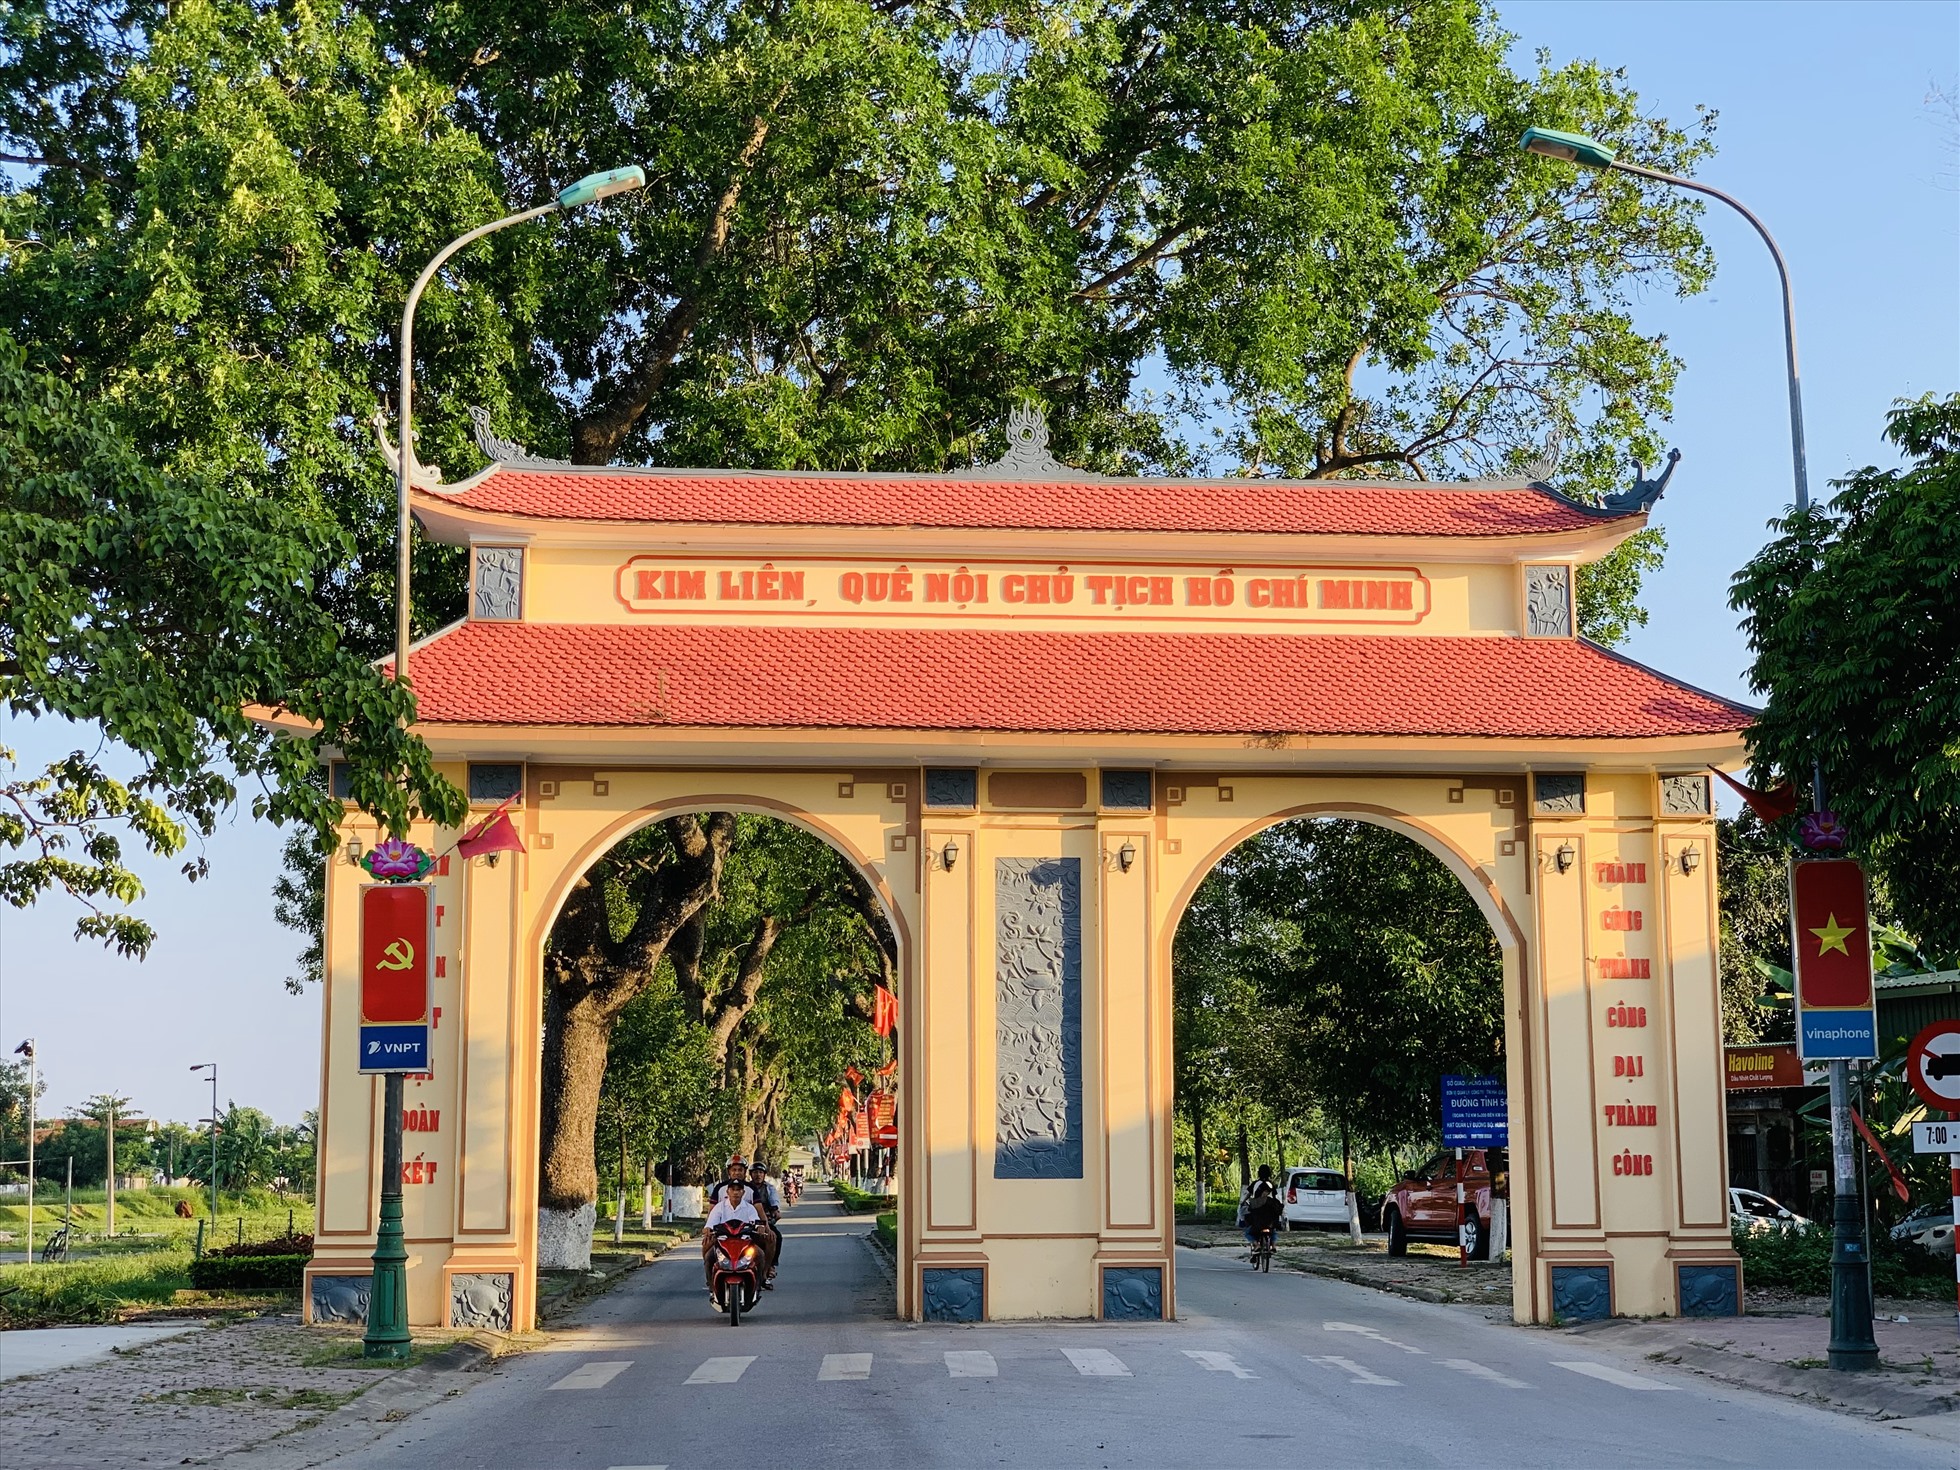 Cổng vào làng Sen, xã Kim Liên ( Nam Đàn, Nghệ An)- quê nội Chủ tịch Hồ Chí Minh. Ảnh: Quỳnh Trang